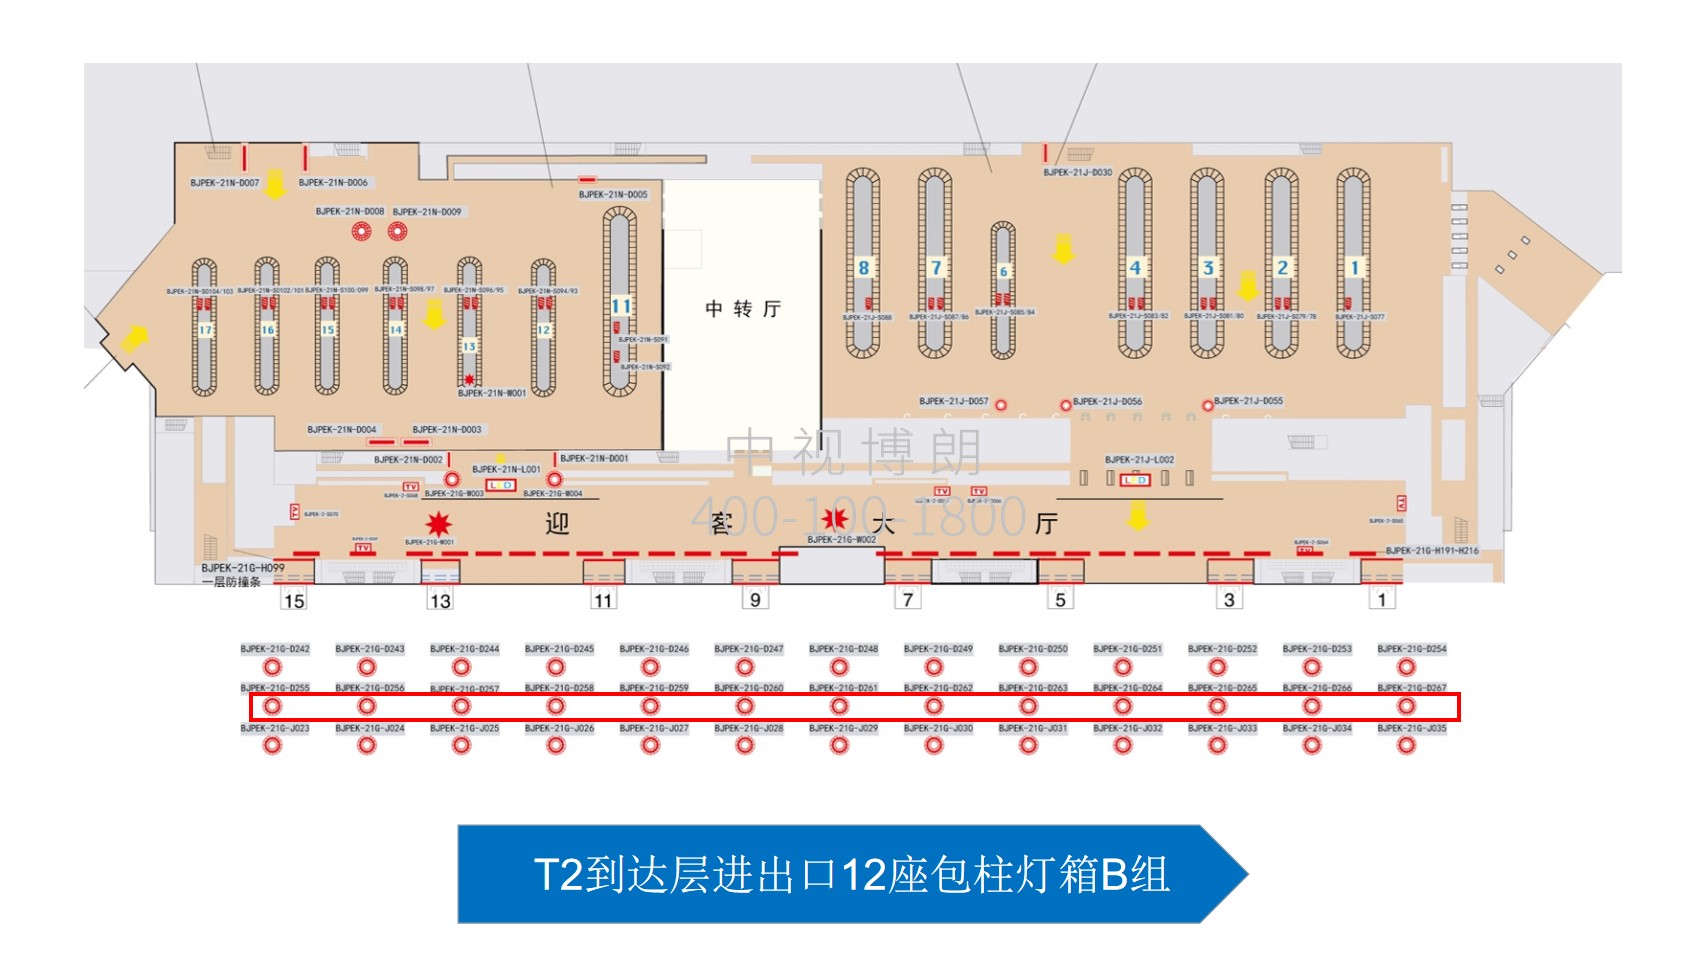 北京首都机场广告-T2到达进出口12座包柱灯箱B组位置图